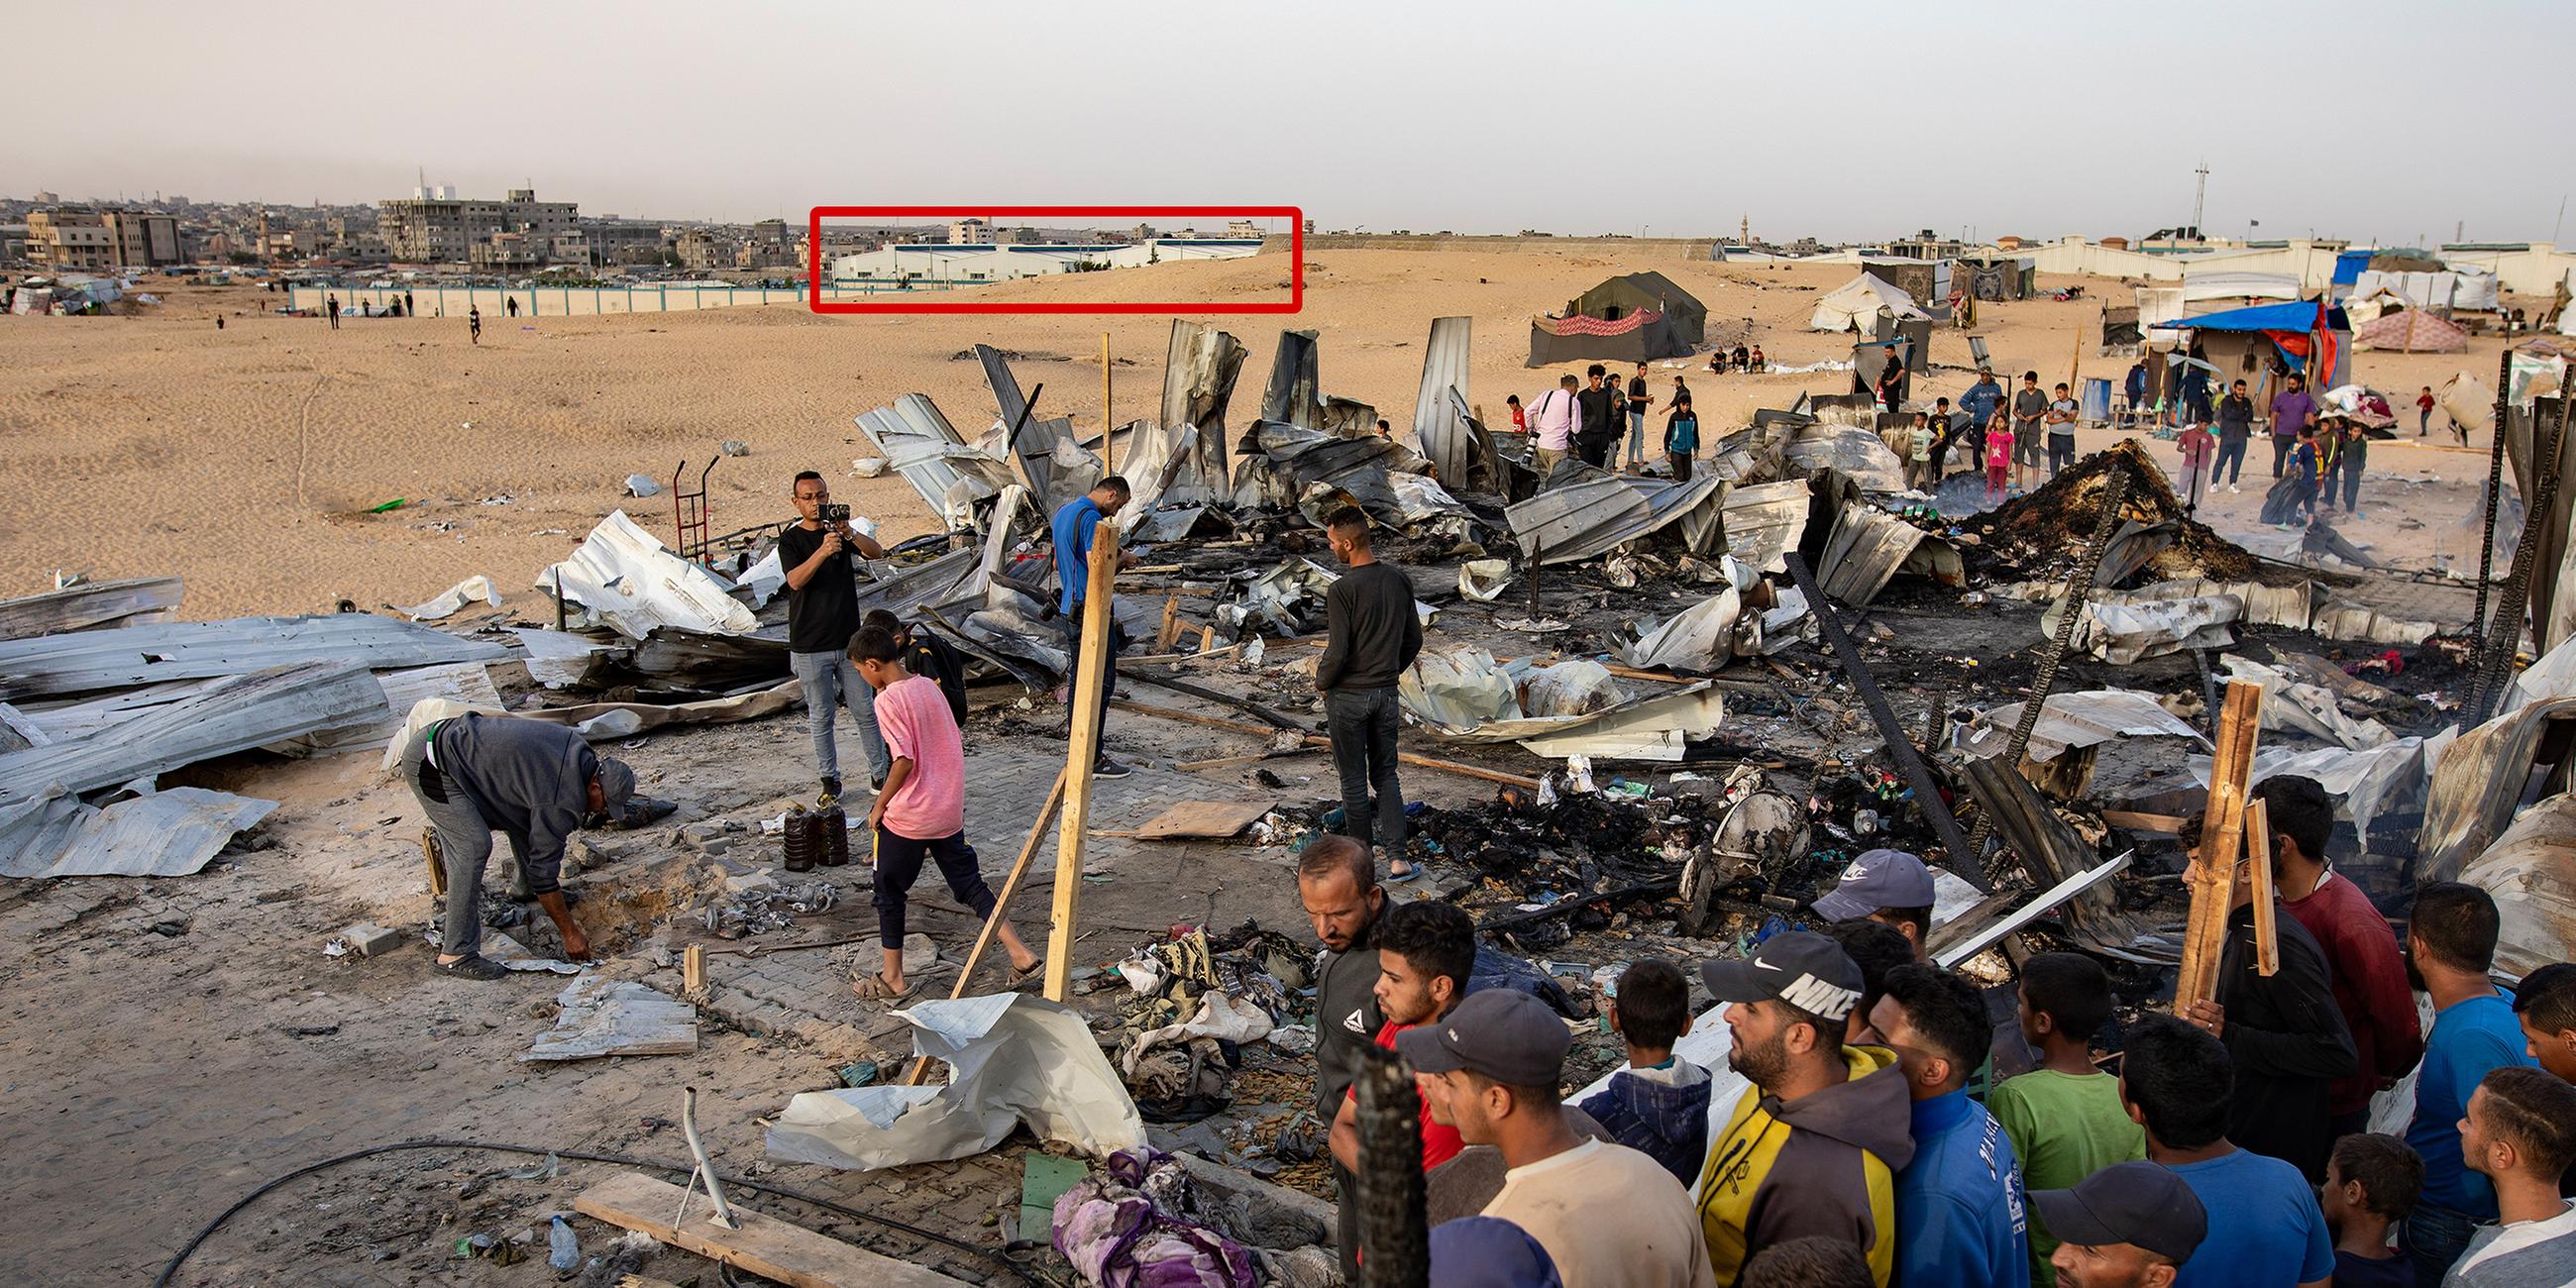 Palästinensische Gebiete, Rafah: Palästinenser inspizieren zerstörte Zelte und Unterkünfte neben einem ausgebrannten Auto nach einem israelischen Luftangriff auf ein Flüchtlingslager.